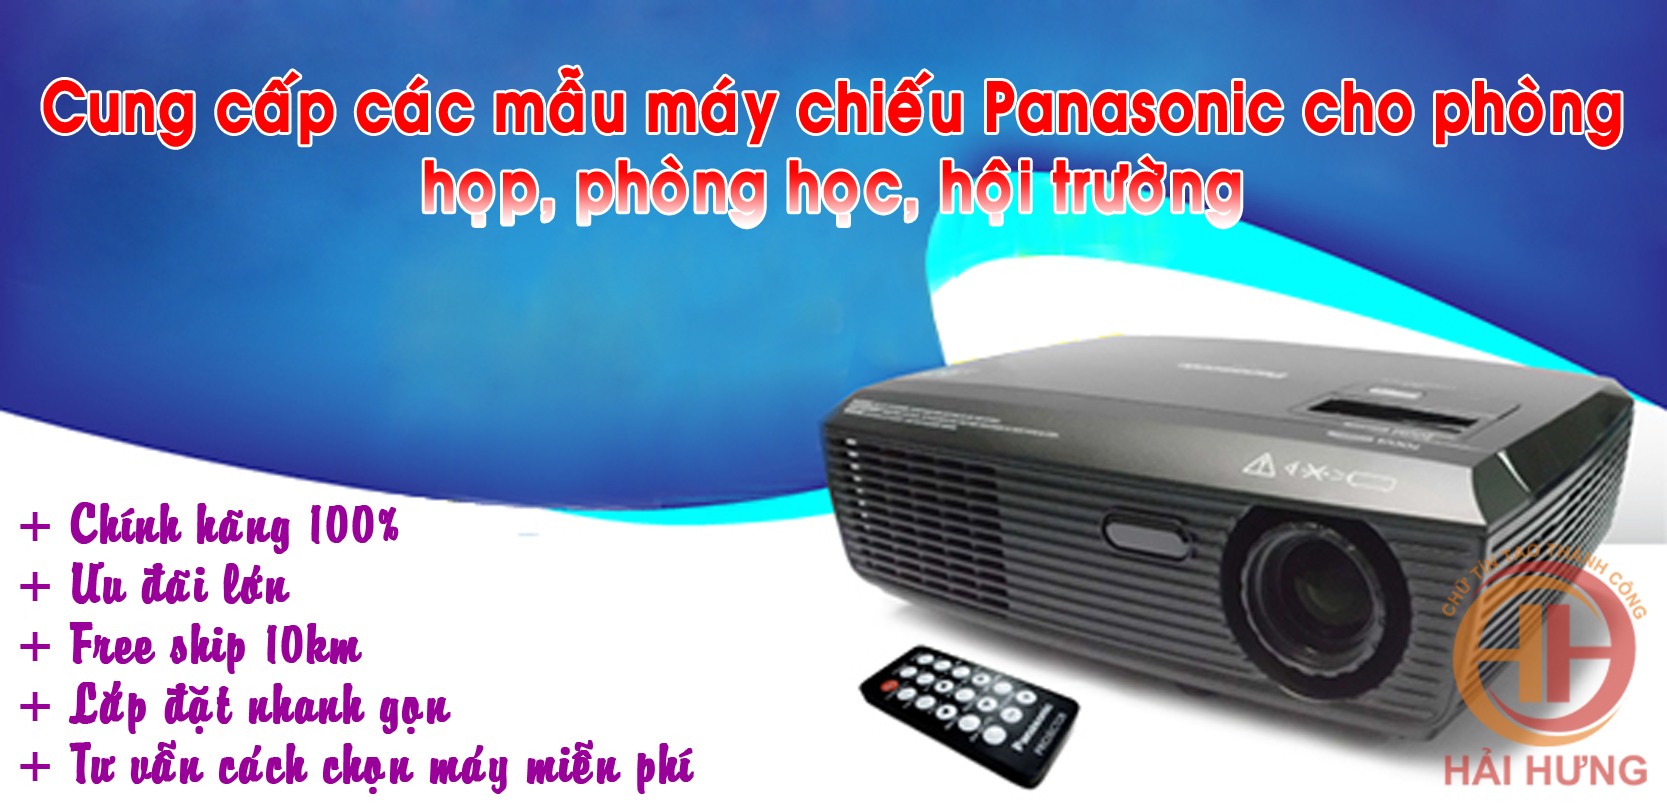 Hải Hưng cung cấp máy chiếu Panasonic cho phòng họp, phòng học, hội trường